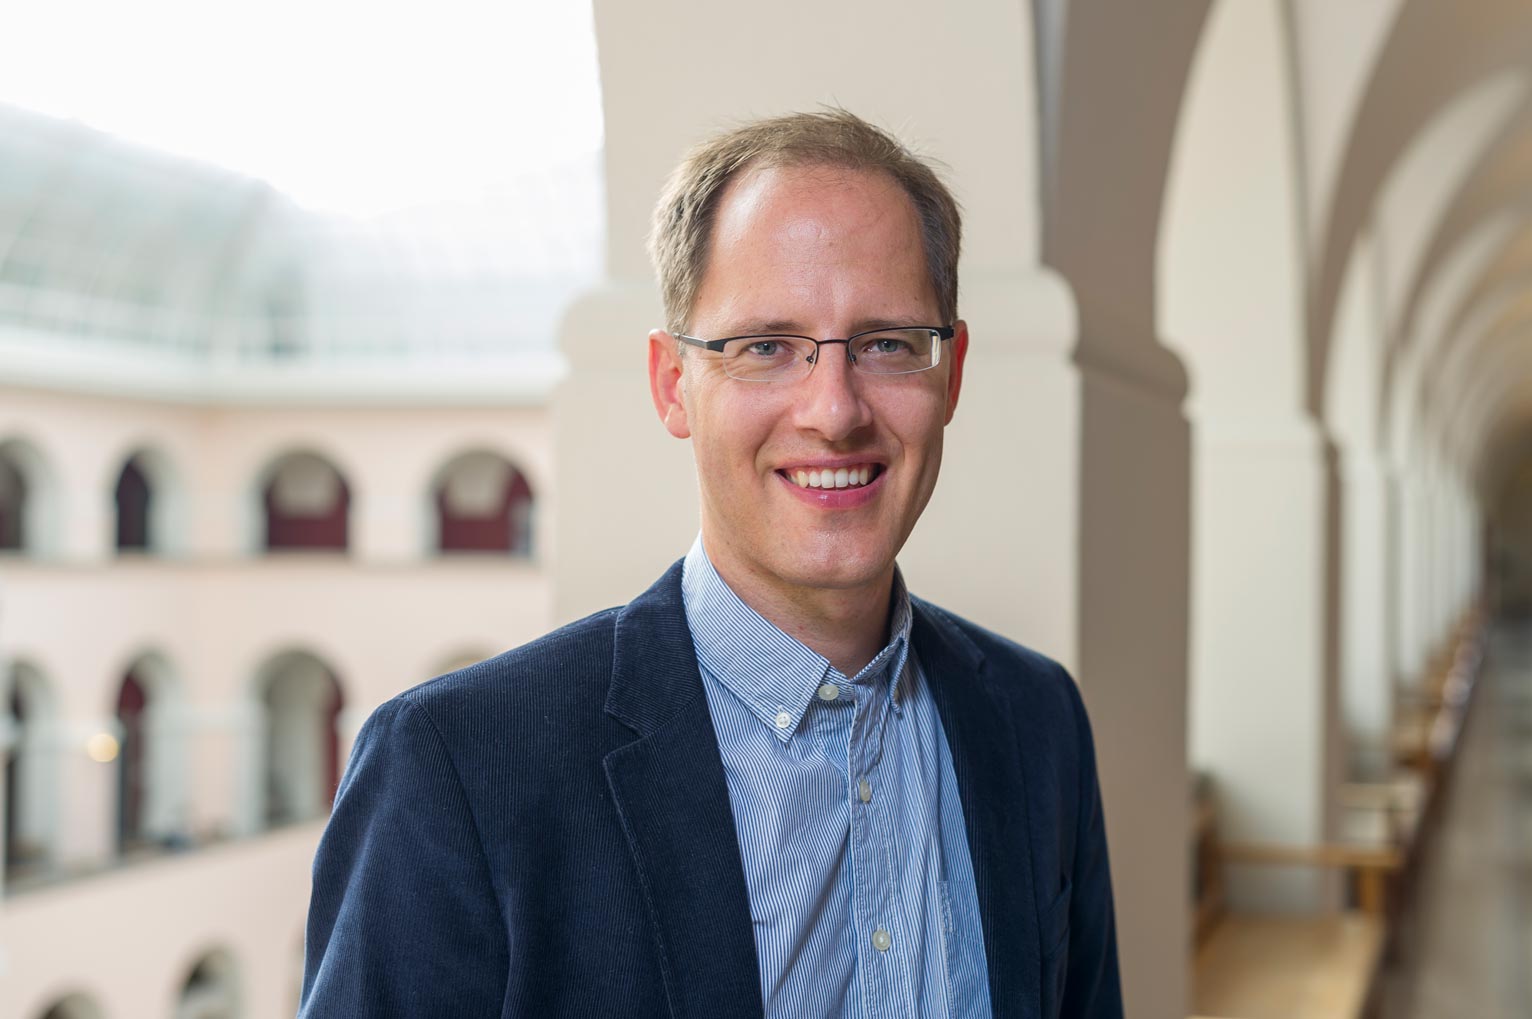 Florian Scheuer ist Professor für Economics of Institutions an der Universität Zürich. Zu seinen Fachgebieten gehören ökonomische Ungleichheit, politische Ökonomie und Steuerpolitik.